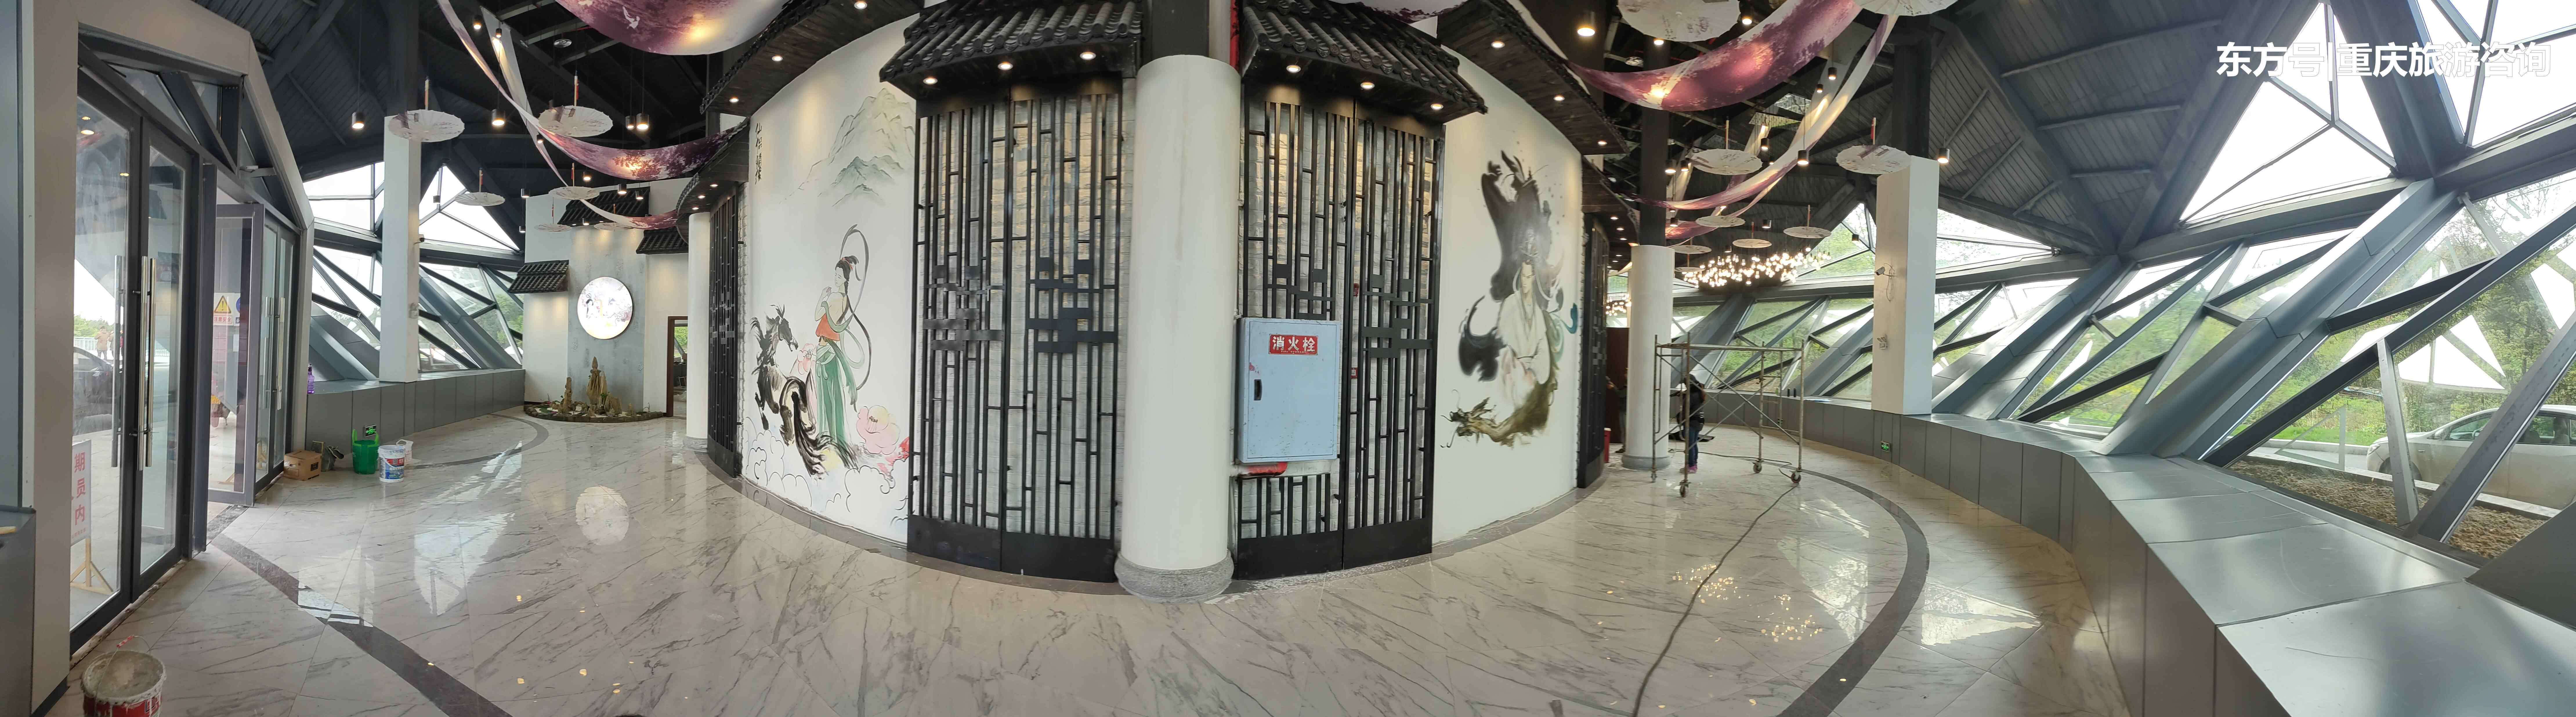 白马影院 5月1日重庆首家8D影院在白马山正式启幕啦！